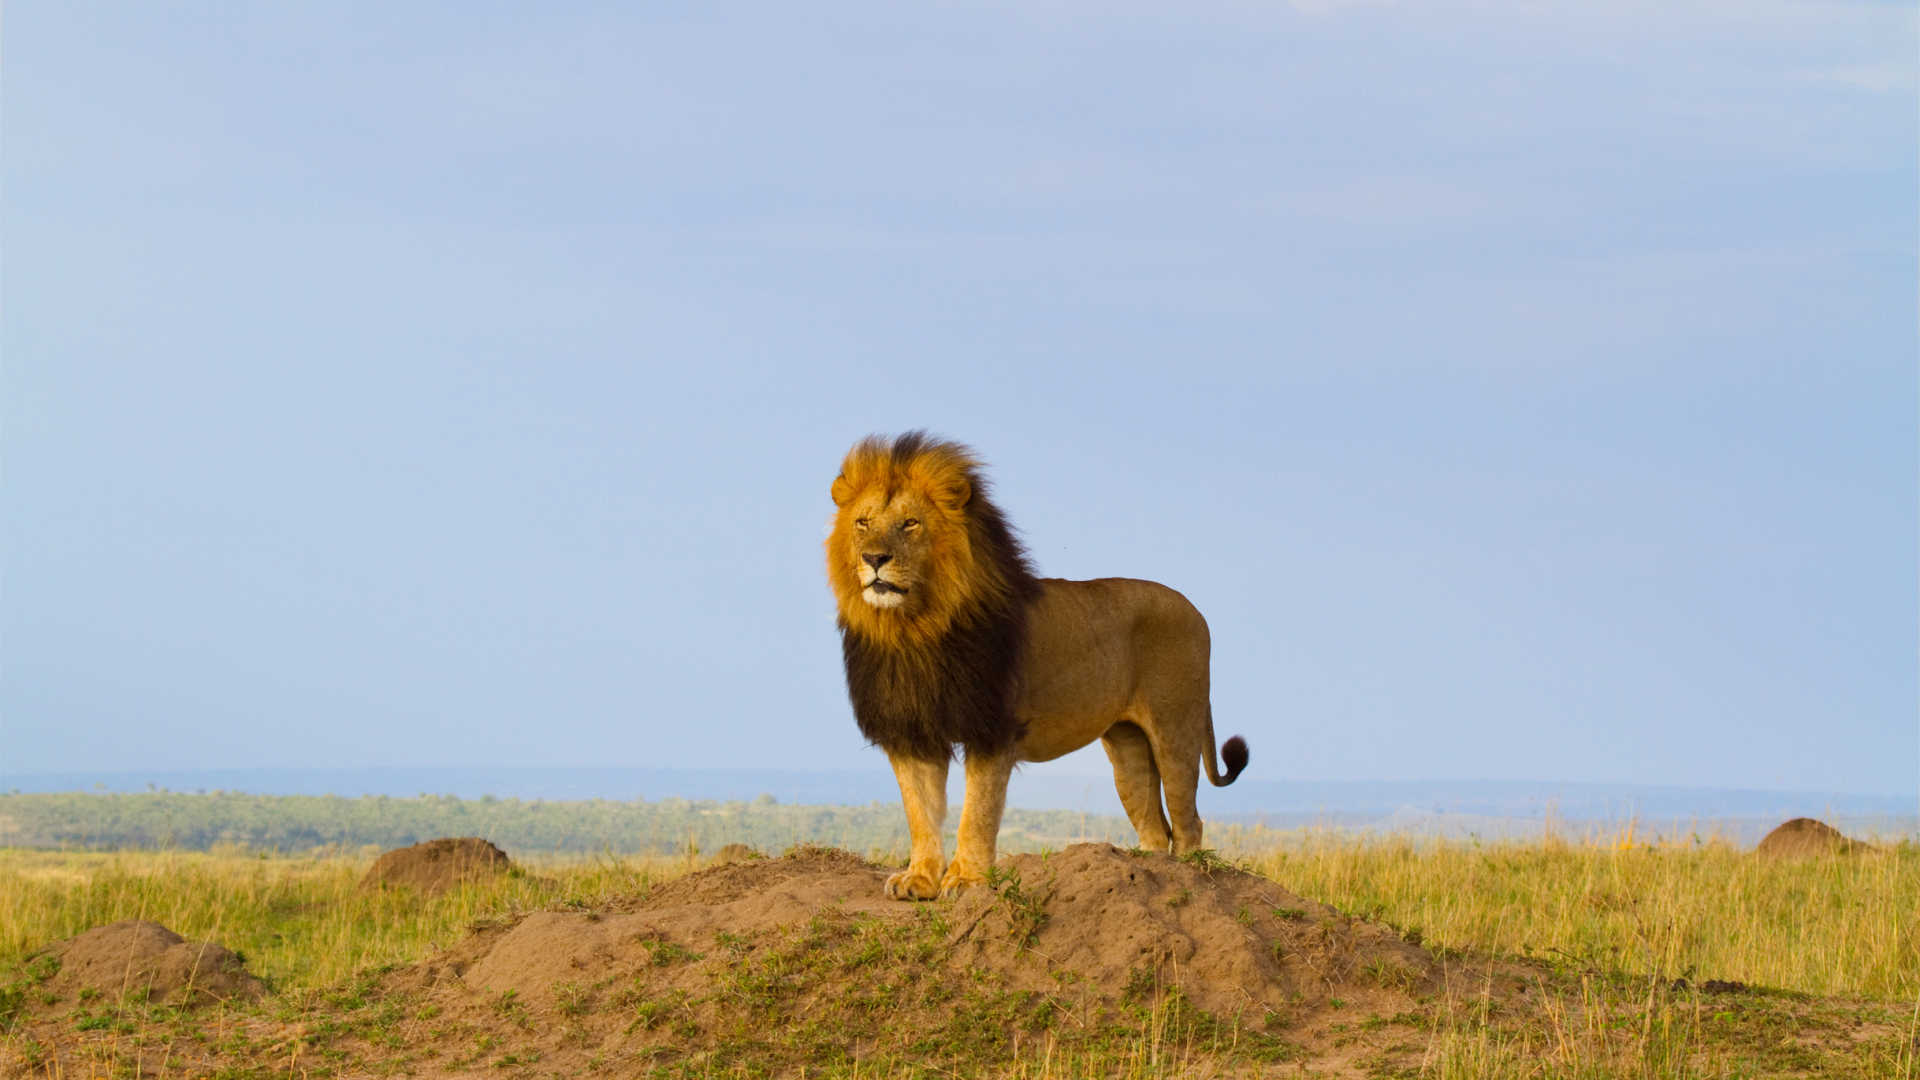 Tanzania safari destinations